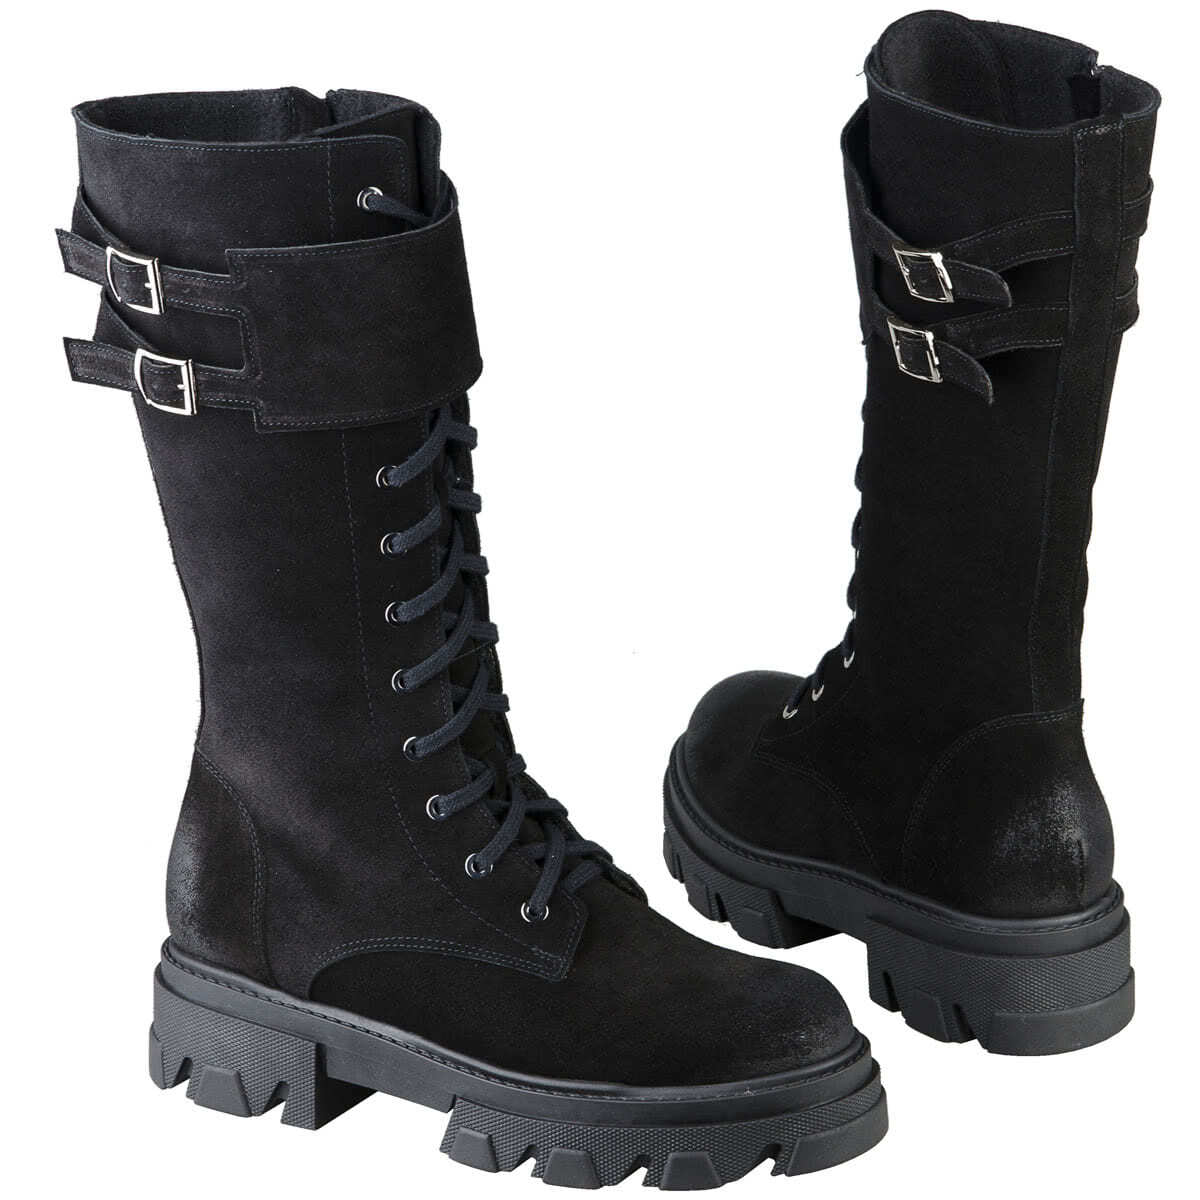 Модные высокие зимние сапоги женские на шнуровке с толстой подошвой 5 см  купить в интернет магазине Kwinto